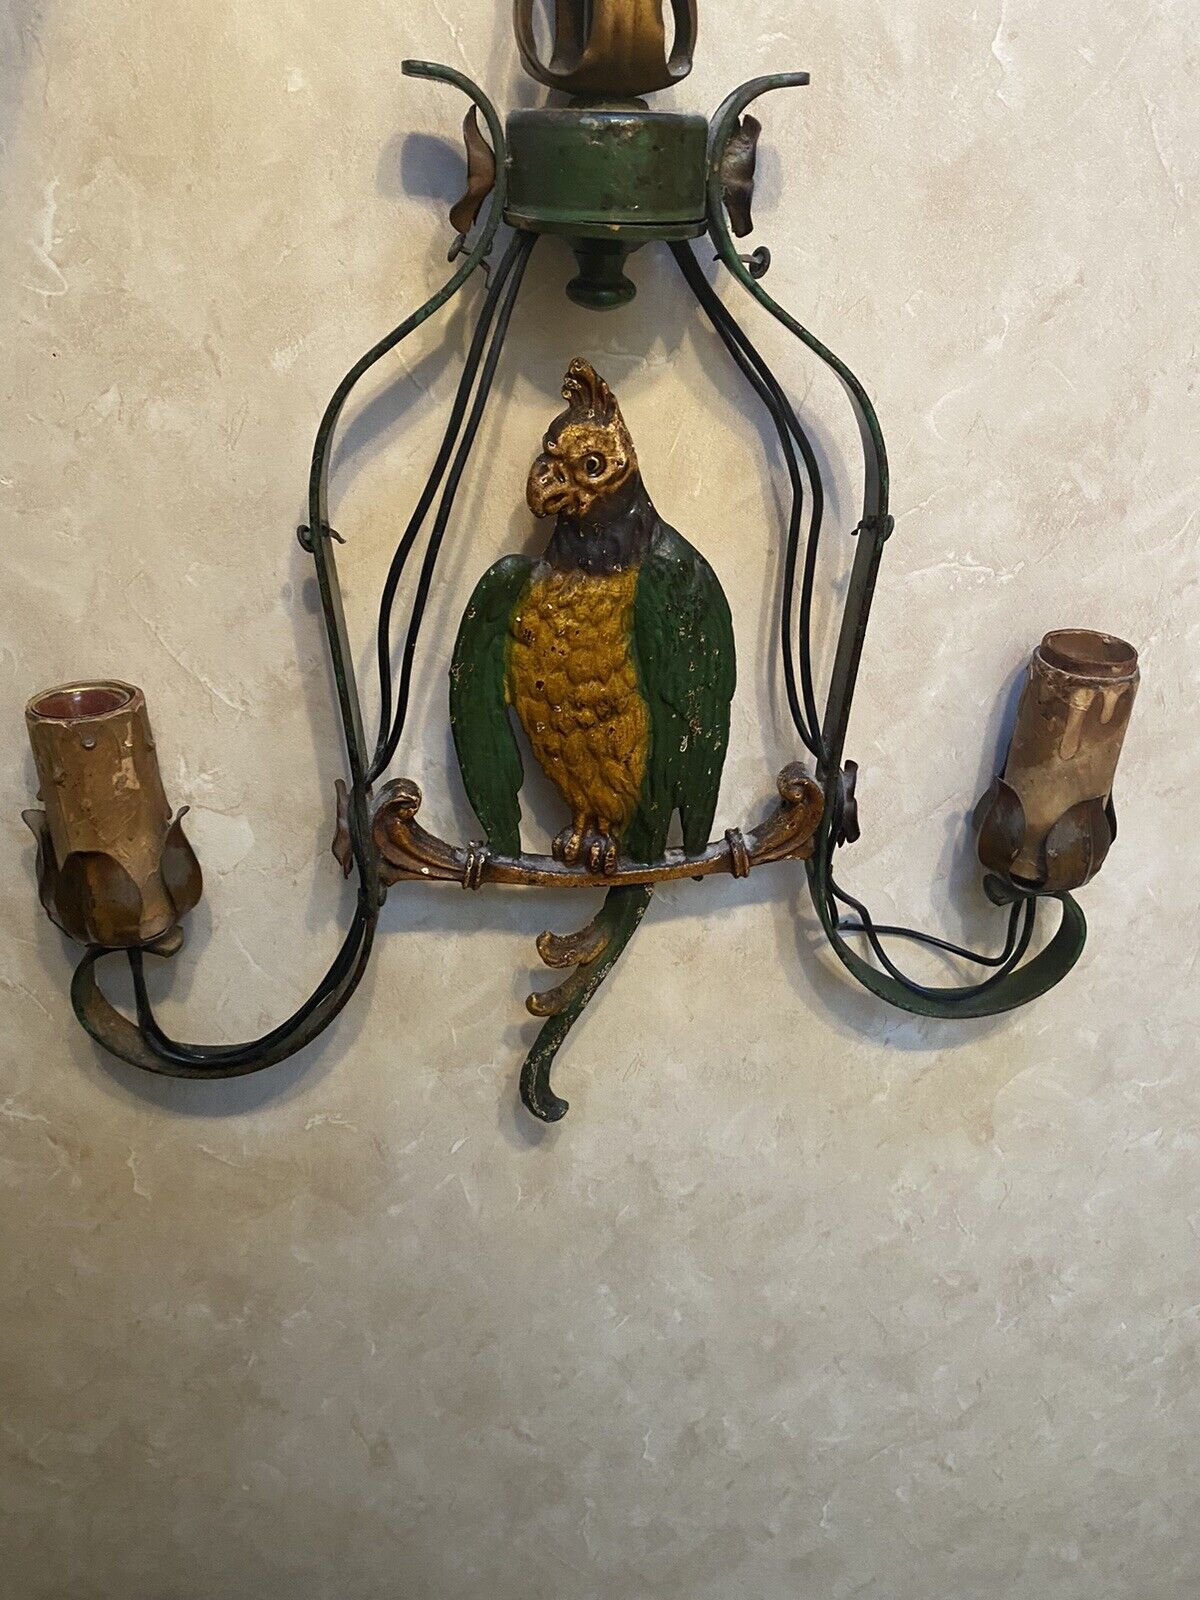 ANTIQUE HUBLEY CAST IRON PARROT BIRD HANGING LAMP STATUE SCULPTURE All Original